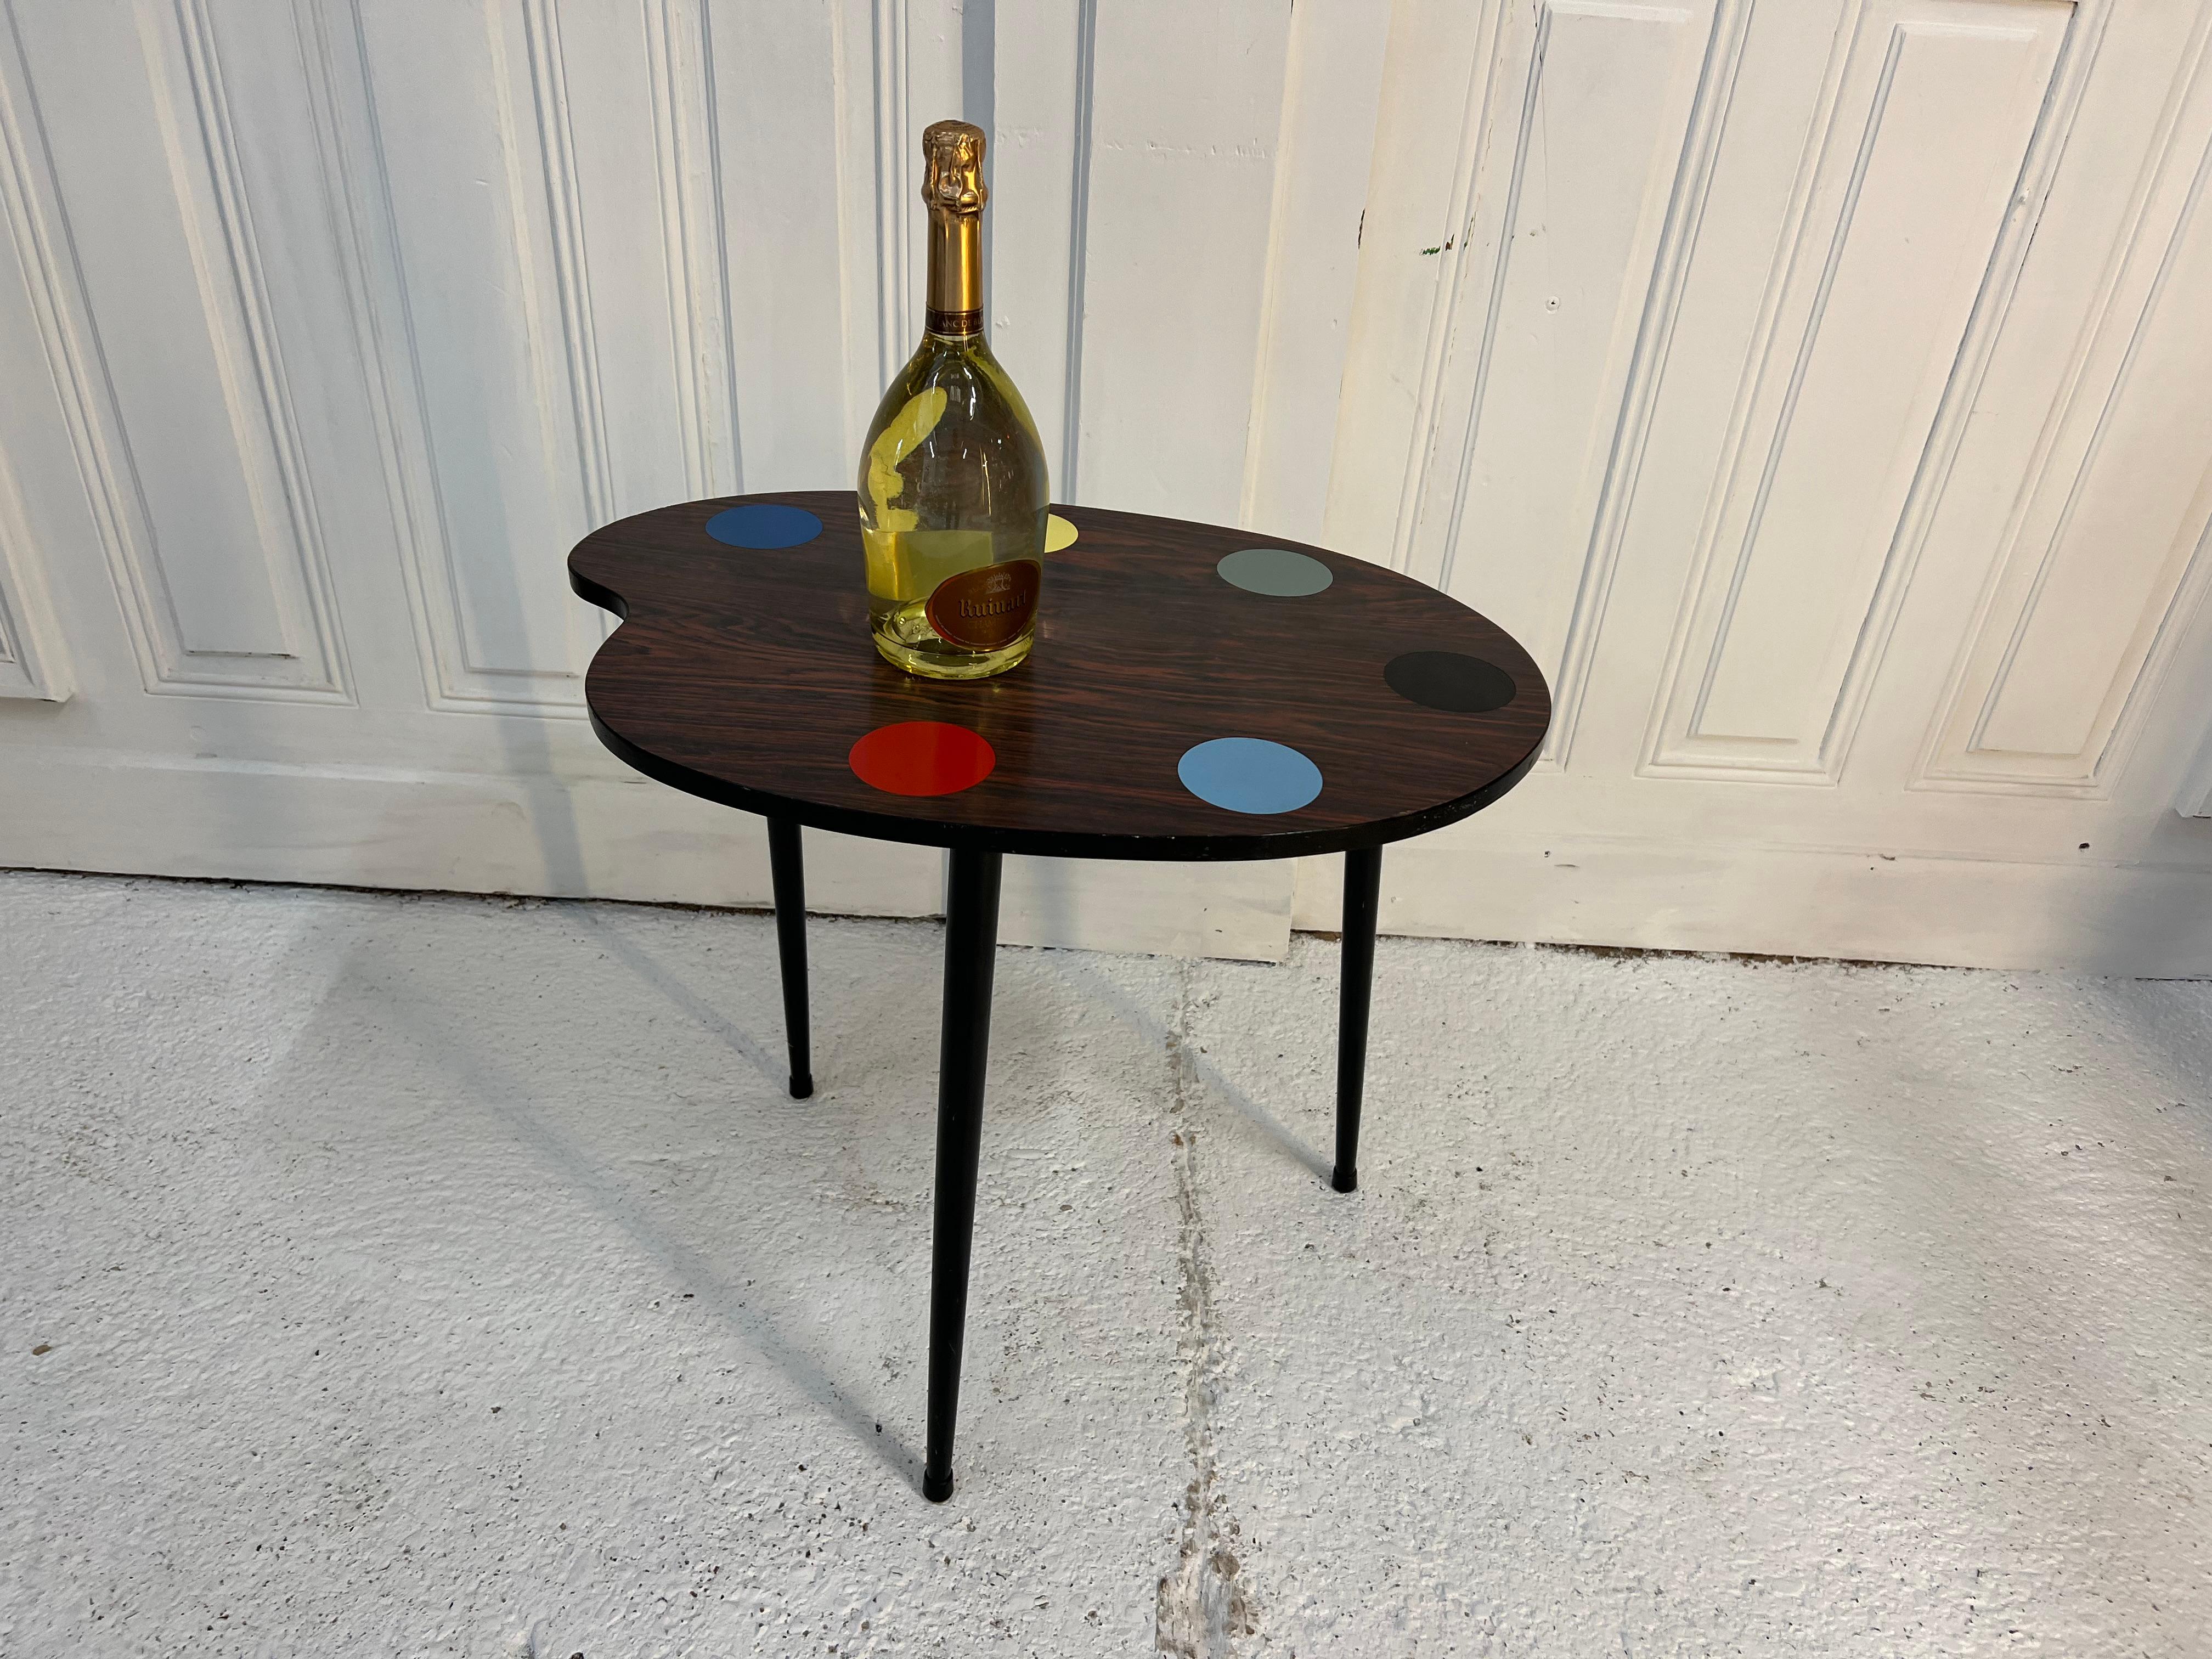 Table basse en formica des années 60 en forme de palette de peintre
les fentes pour les verres sont différenciées par les couleurs
les pieds sont entièrement dévissables pour le transport